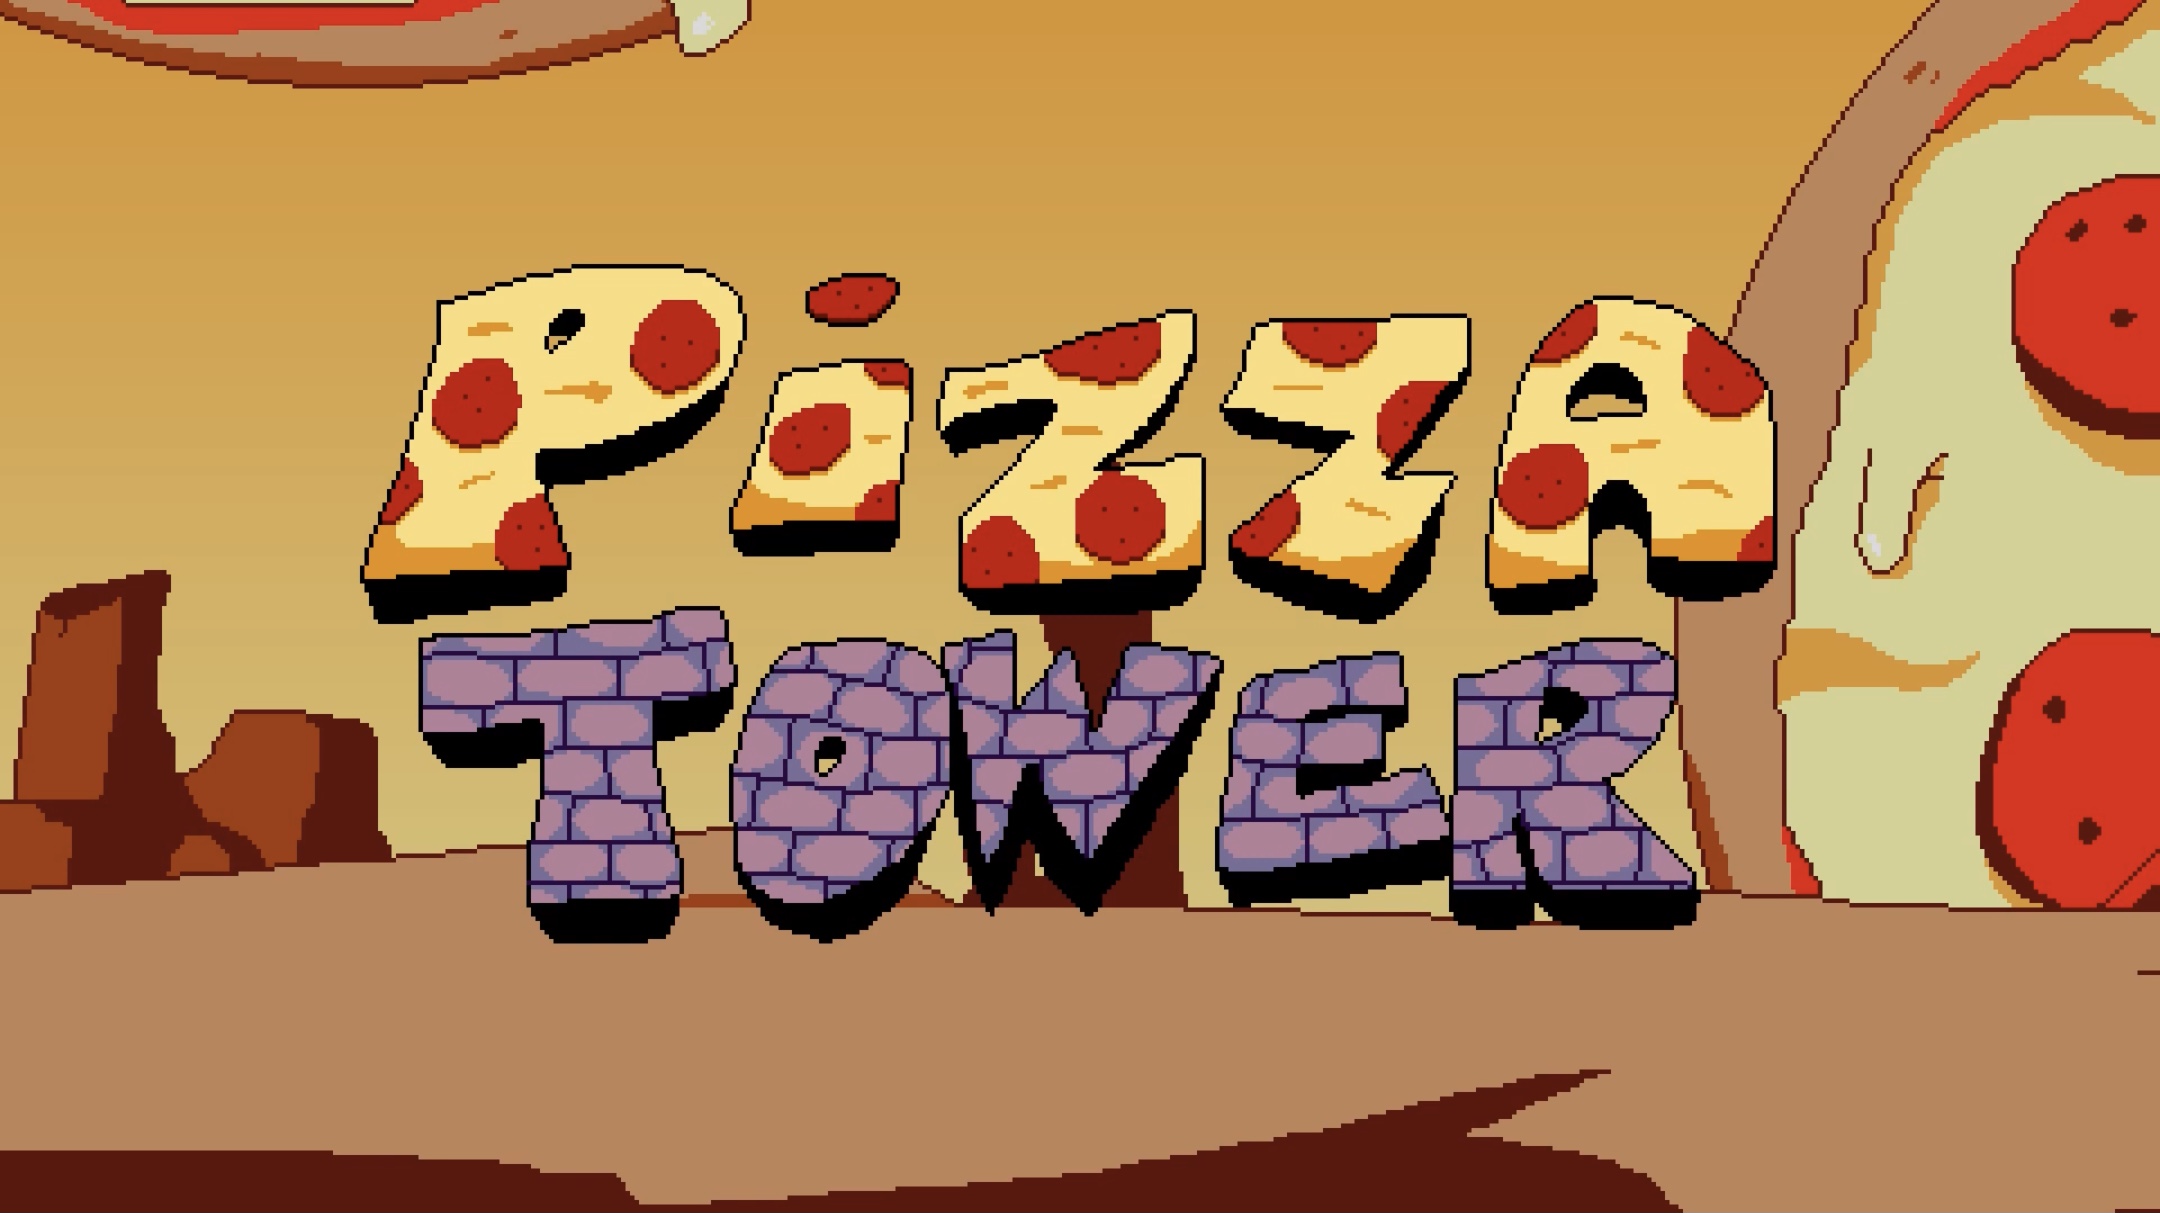 PIZZA TOWER VOCODE EDITION (server exclusive no more public download) by  Vocode